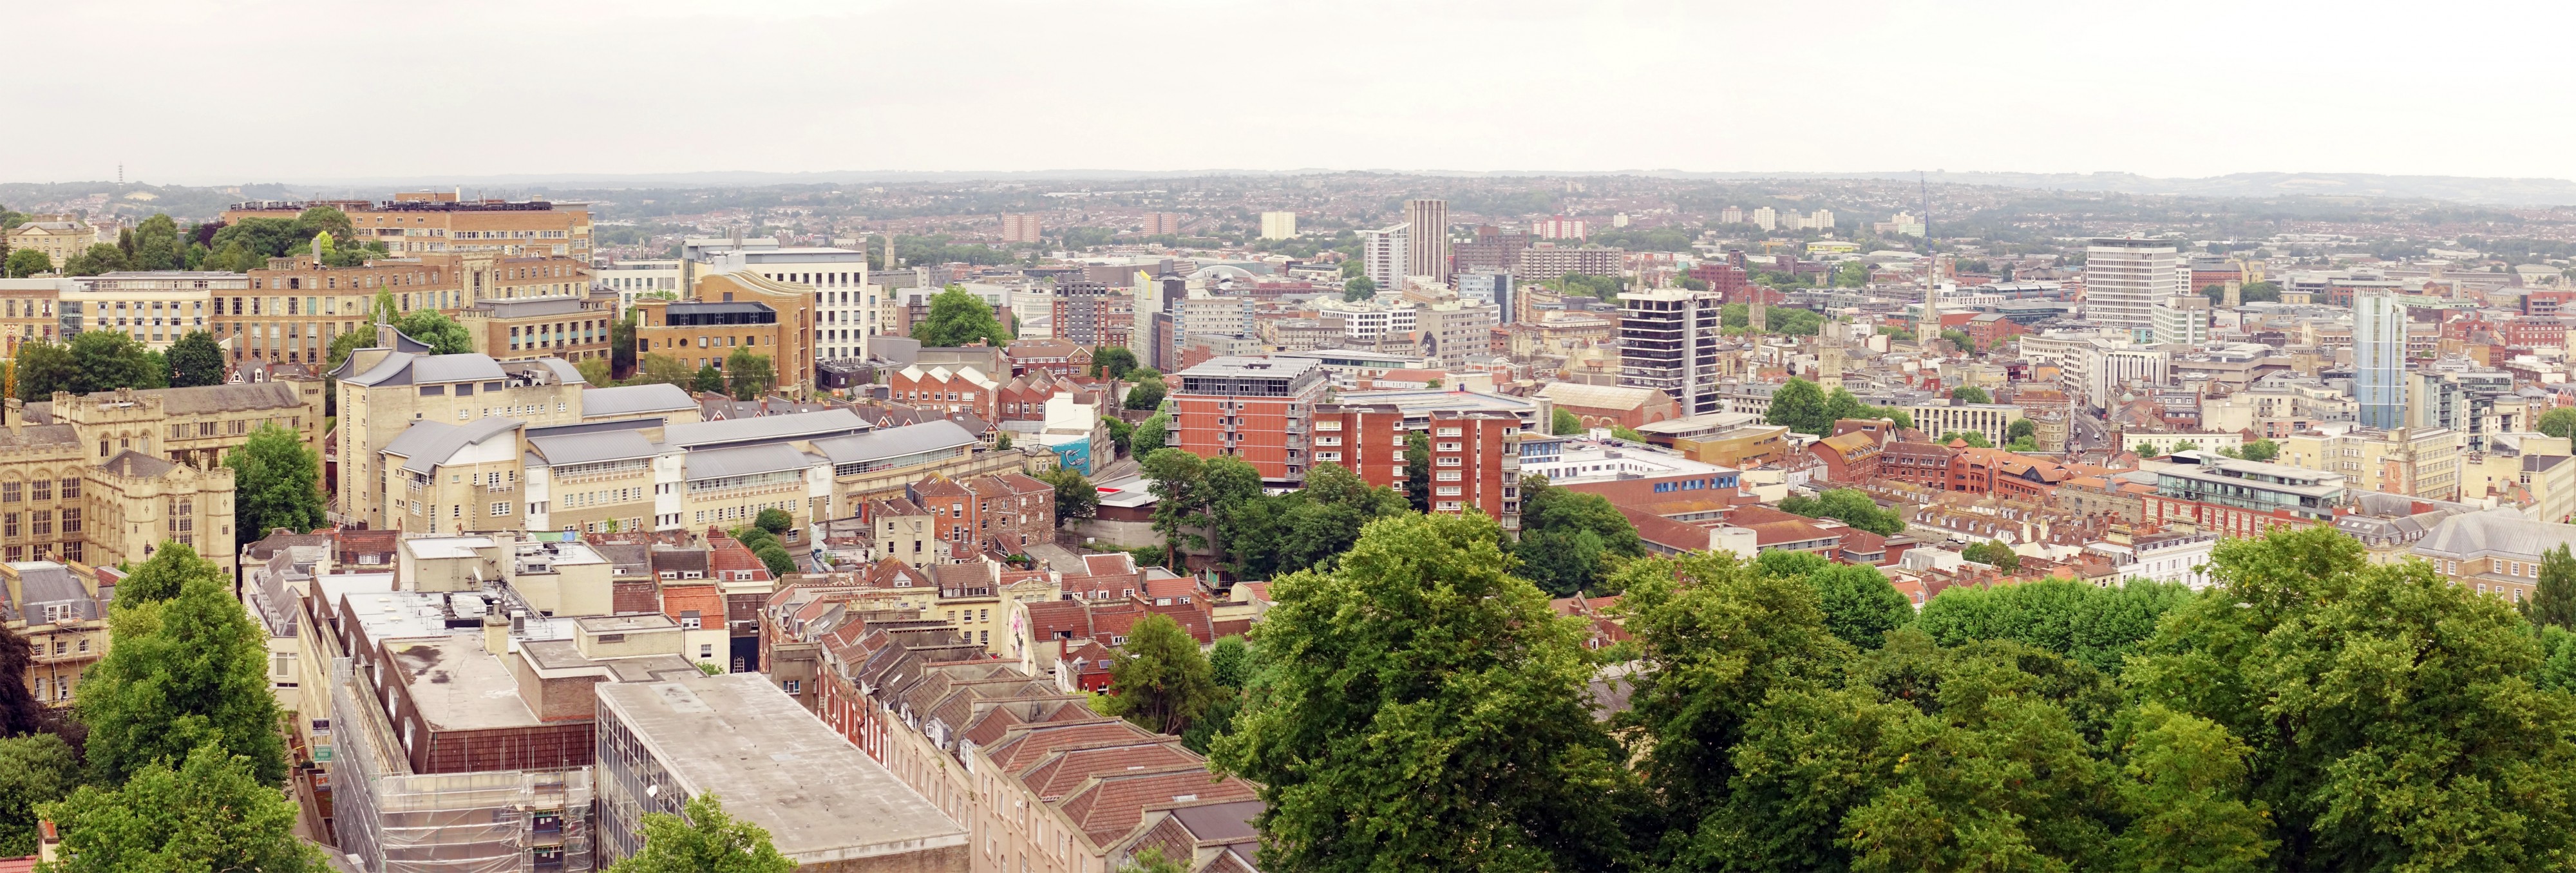 Bristol view